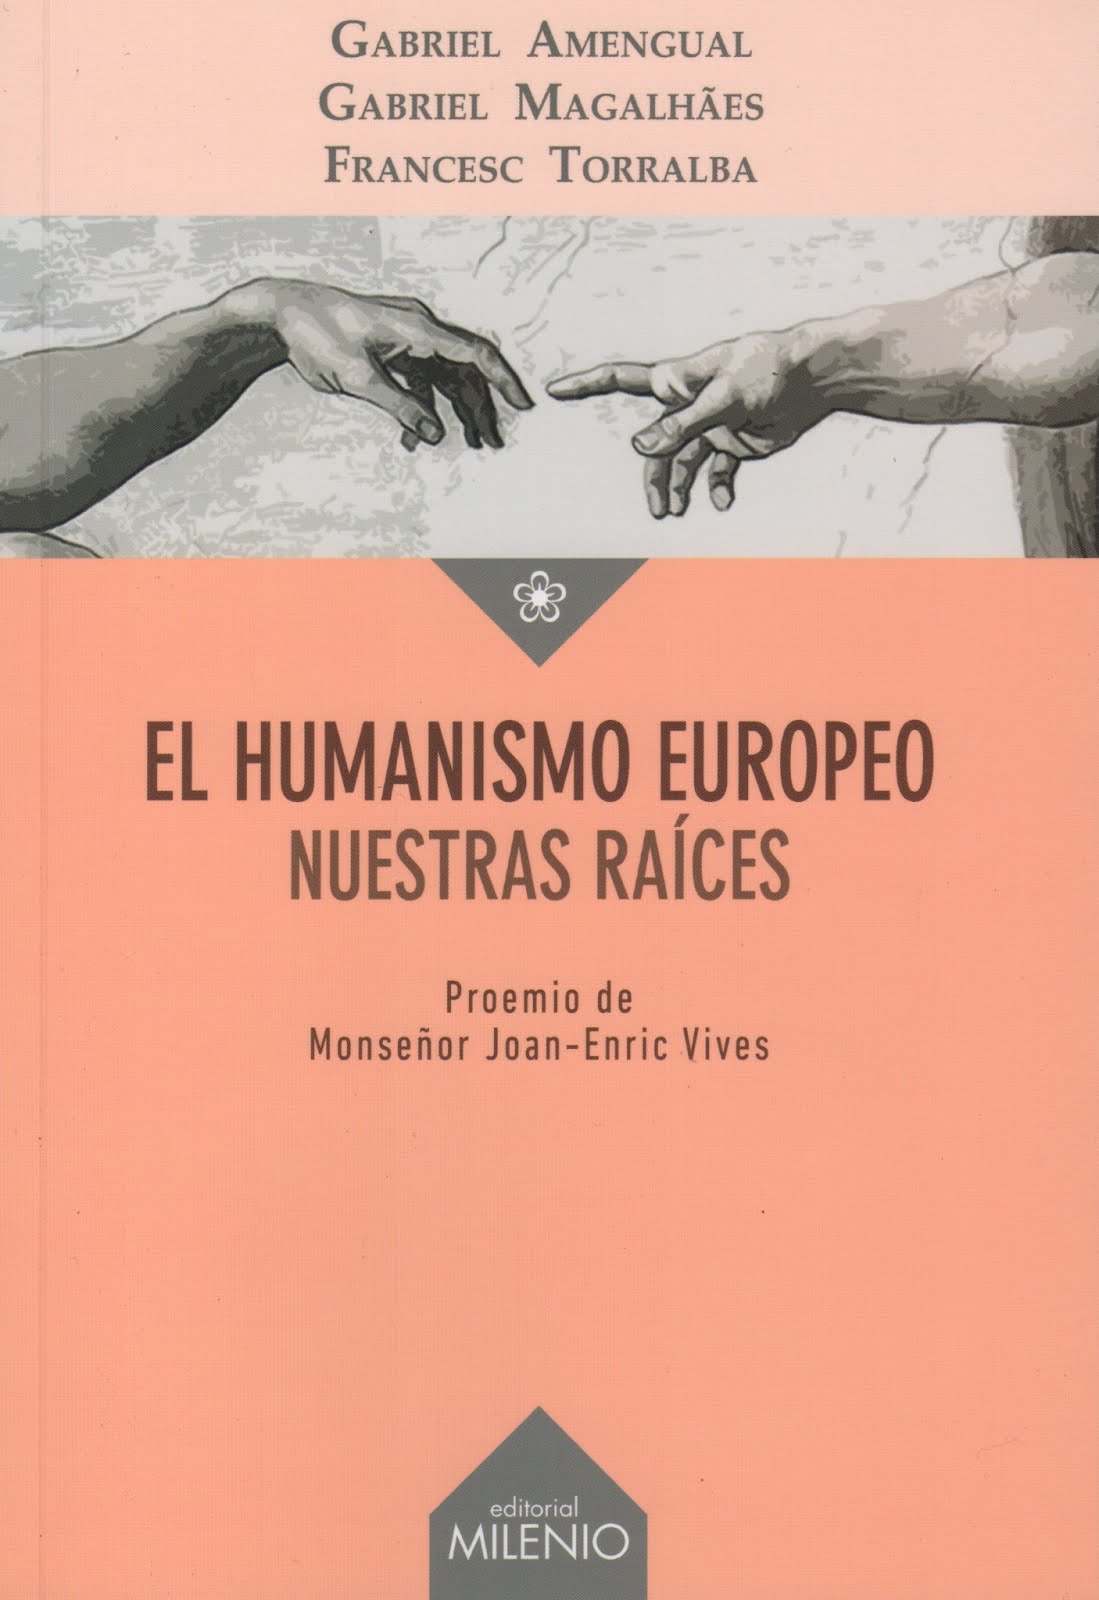 Gabriel Amengual y otros (El humanismo europeo) Nuestras raíces